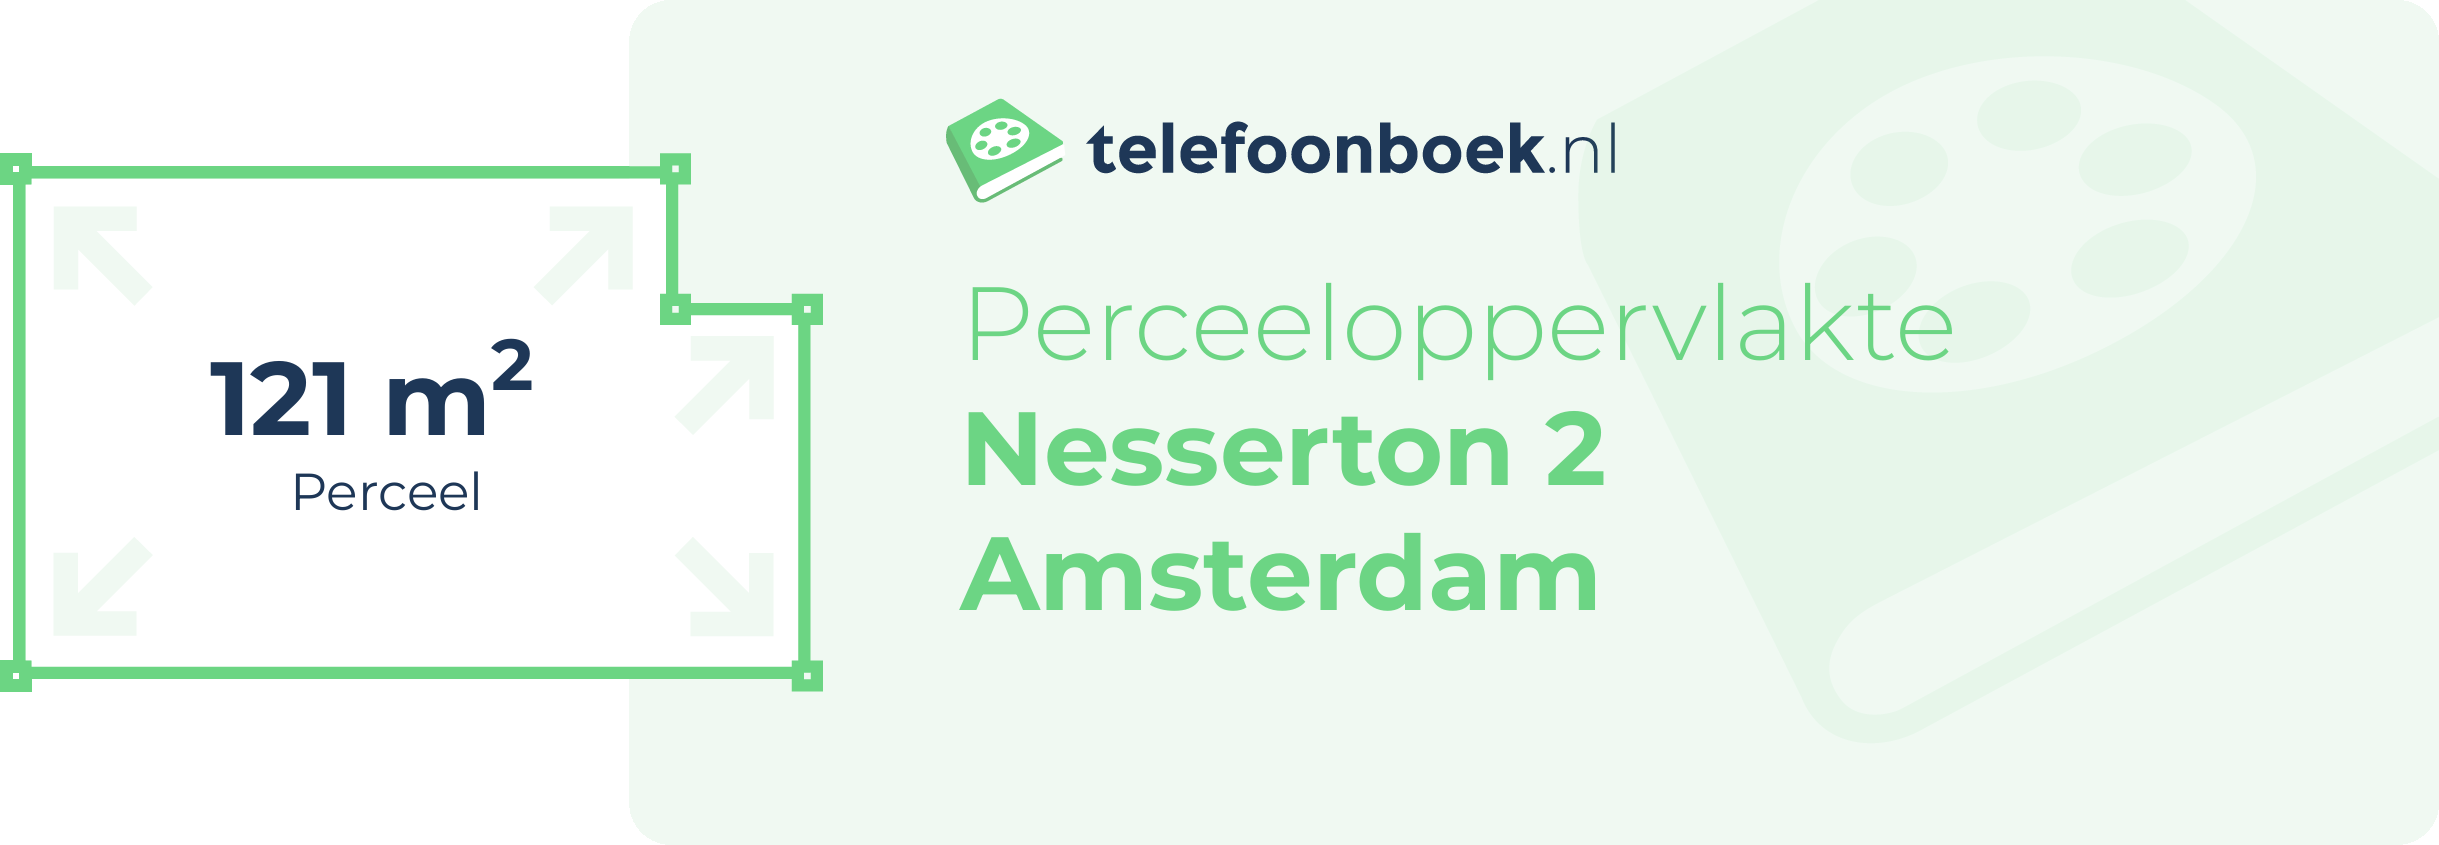 Perceeloppervlakte Nesserton 2 Amsterdam